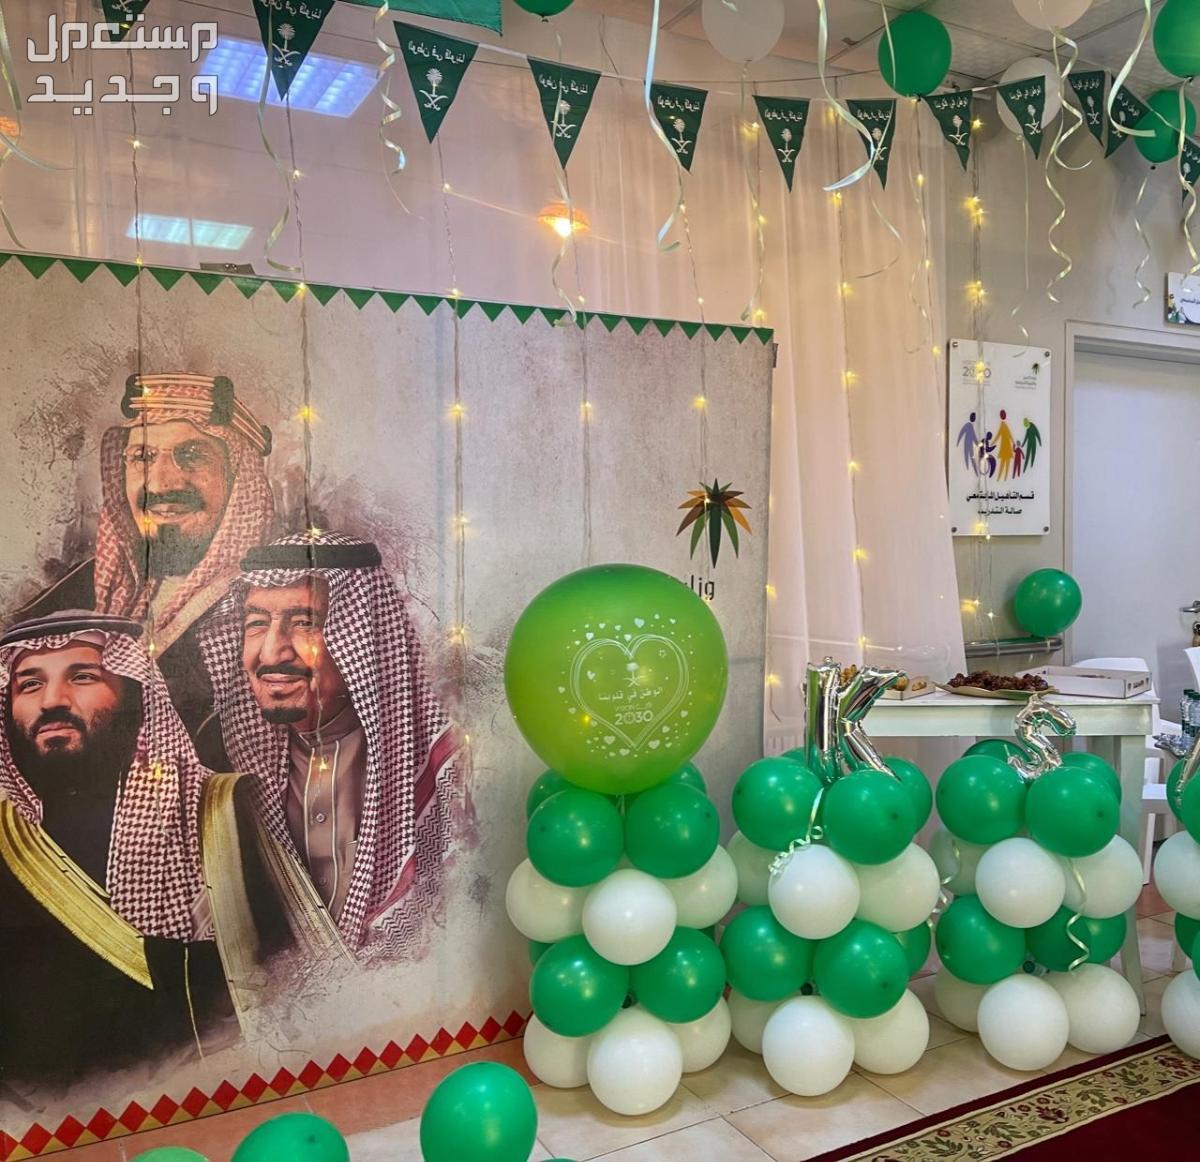 صور ديكورات داخلية بمناسبة اليوم الوطني السعودي 1445 في سوريا ديكورات داخلية بمناسبة اليوم الوطني